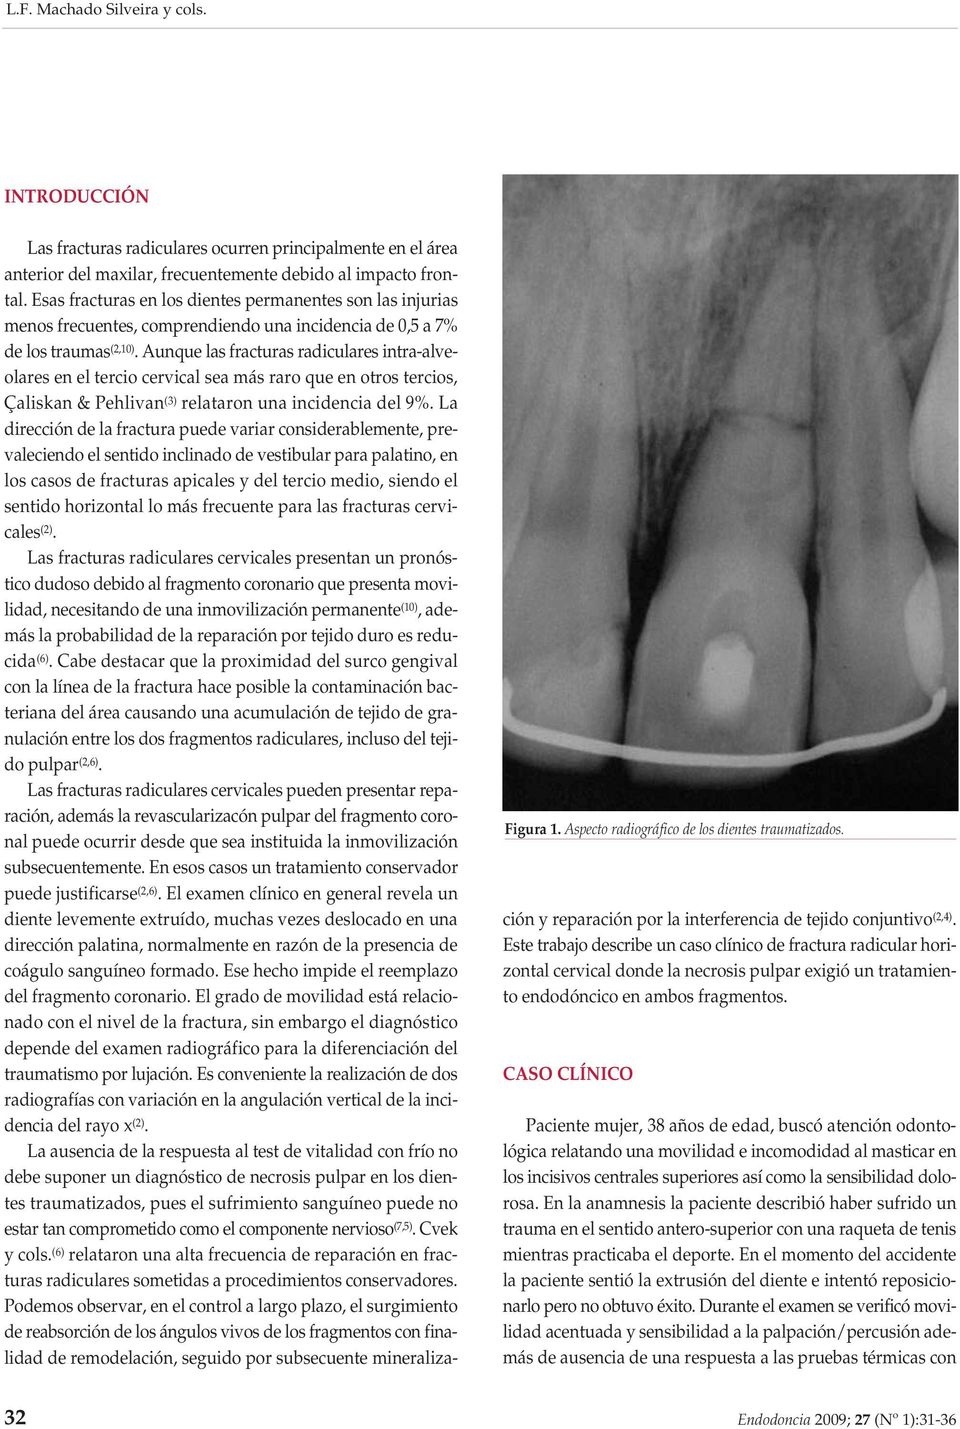 Esas fracturas en los dientes permanentes son las injurias menos frecuentes, comprendiendo una incidencia de 0,5 a 7% de los traumas (2,10).